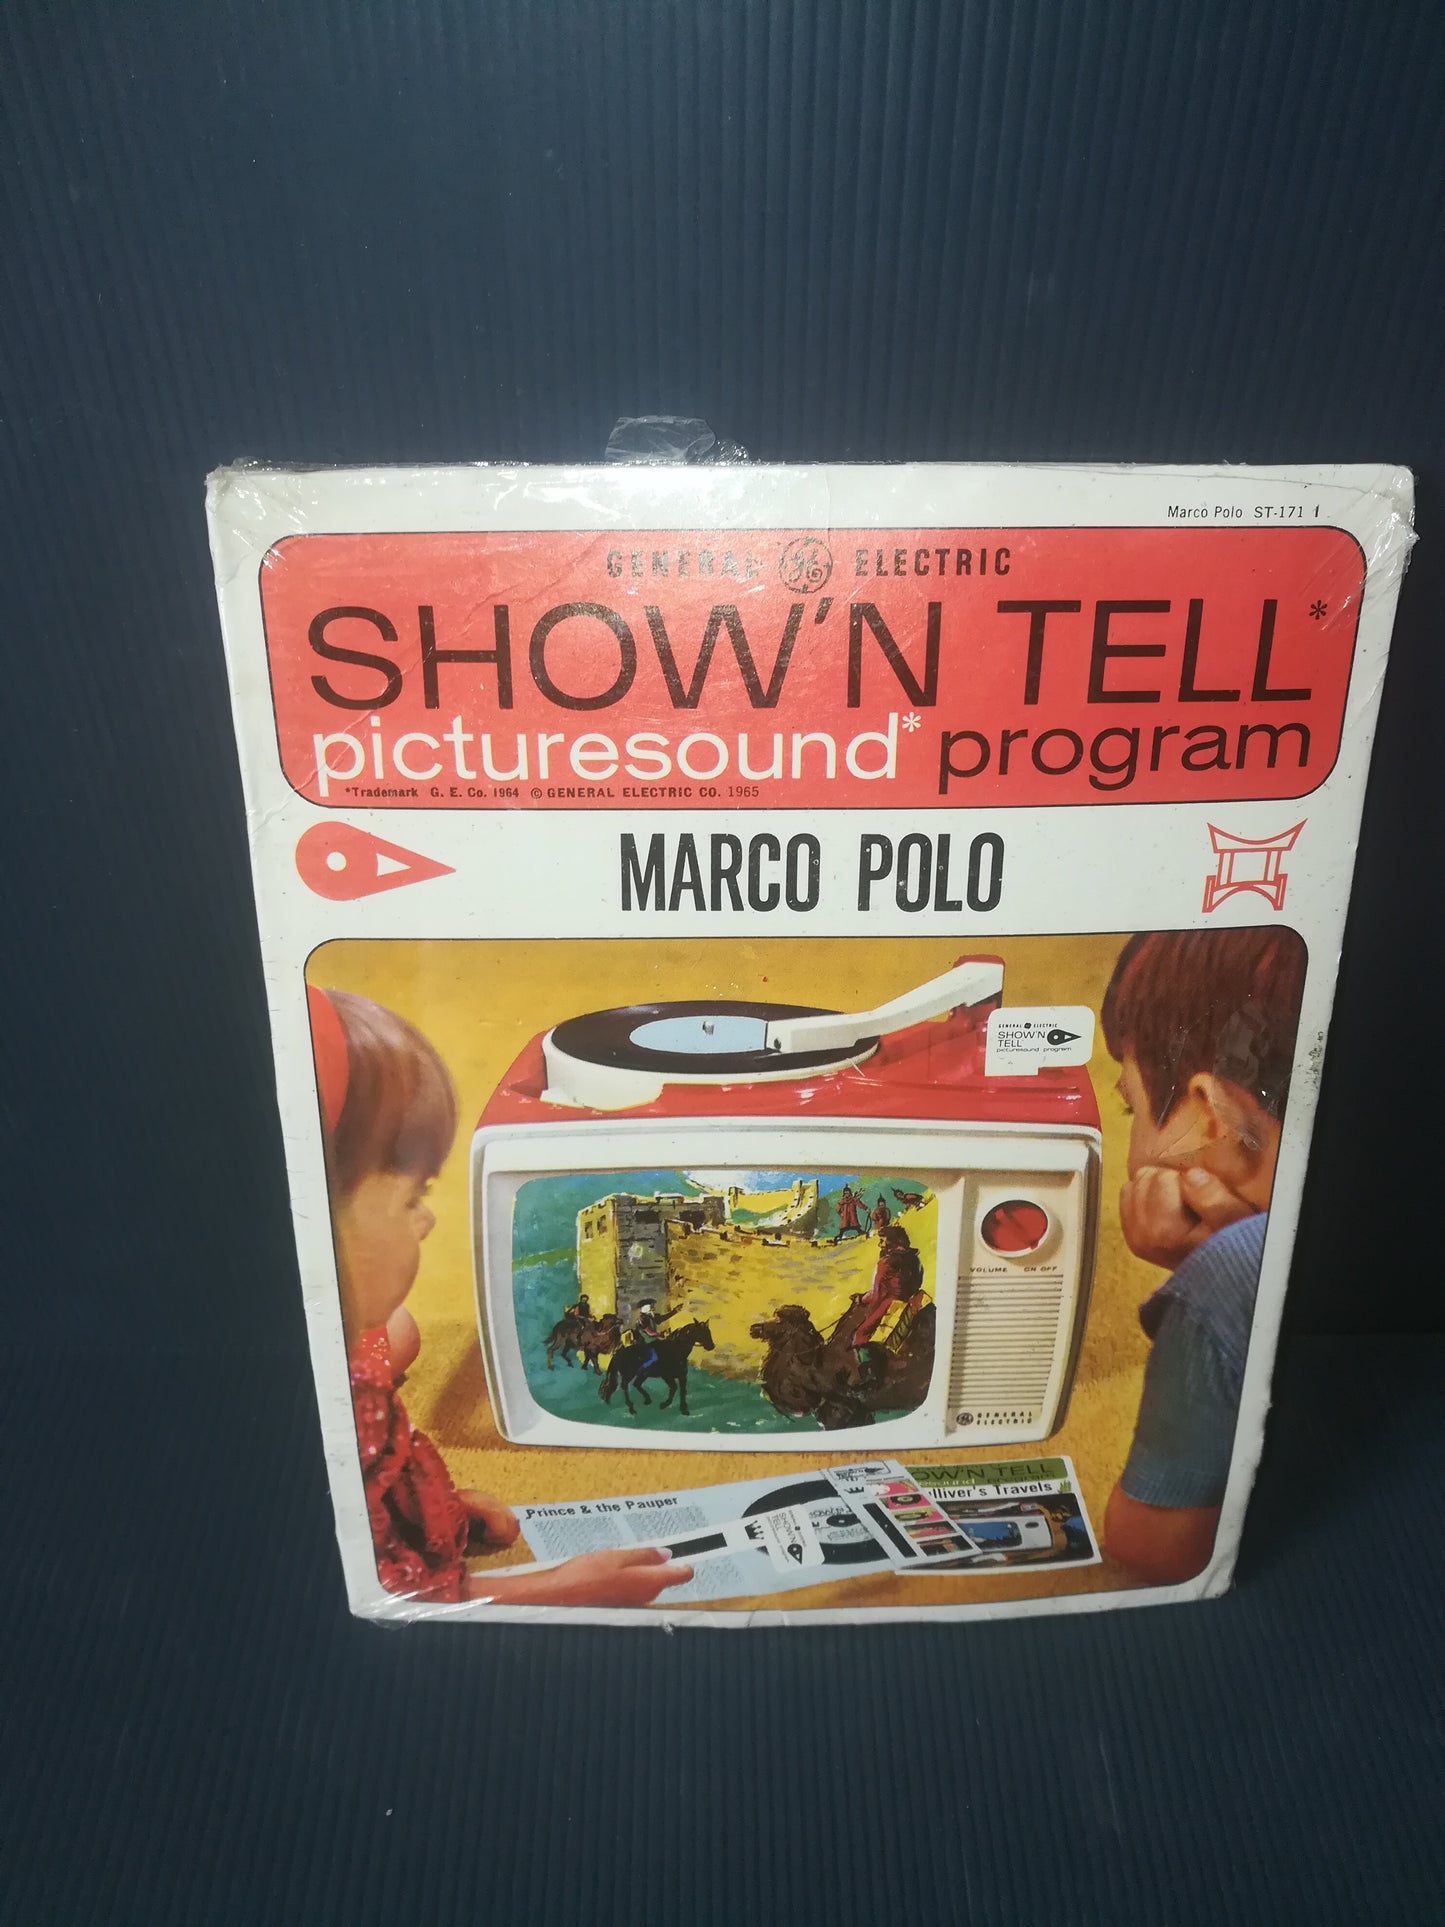 Show'n Tell Picture Sound Marco Polo Prodotto negli anni 60 da General Electric